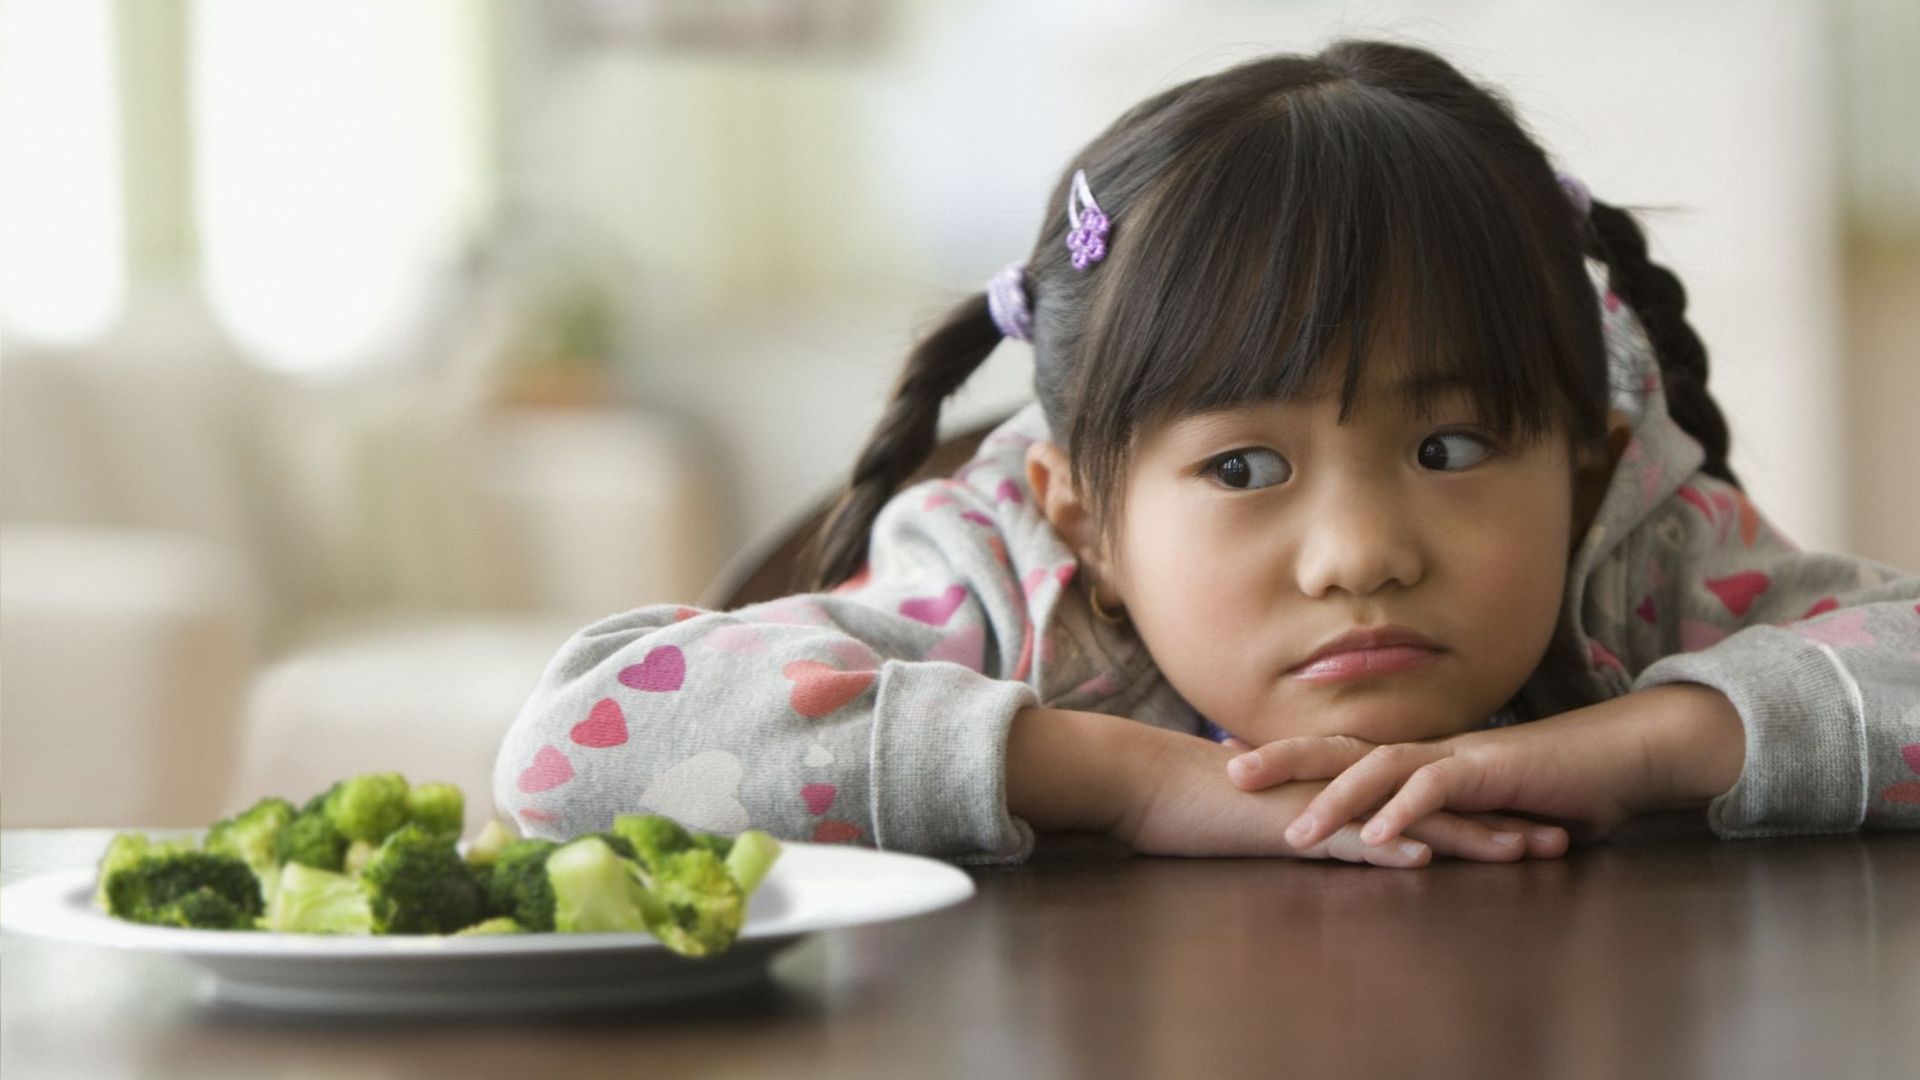 Votre enfant boude devant son assiette ? Le forcer pourrait s'avérer contre-productif